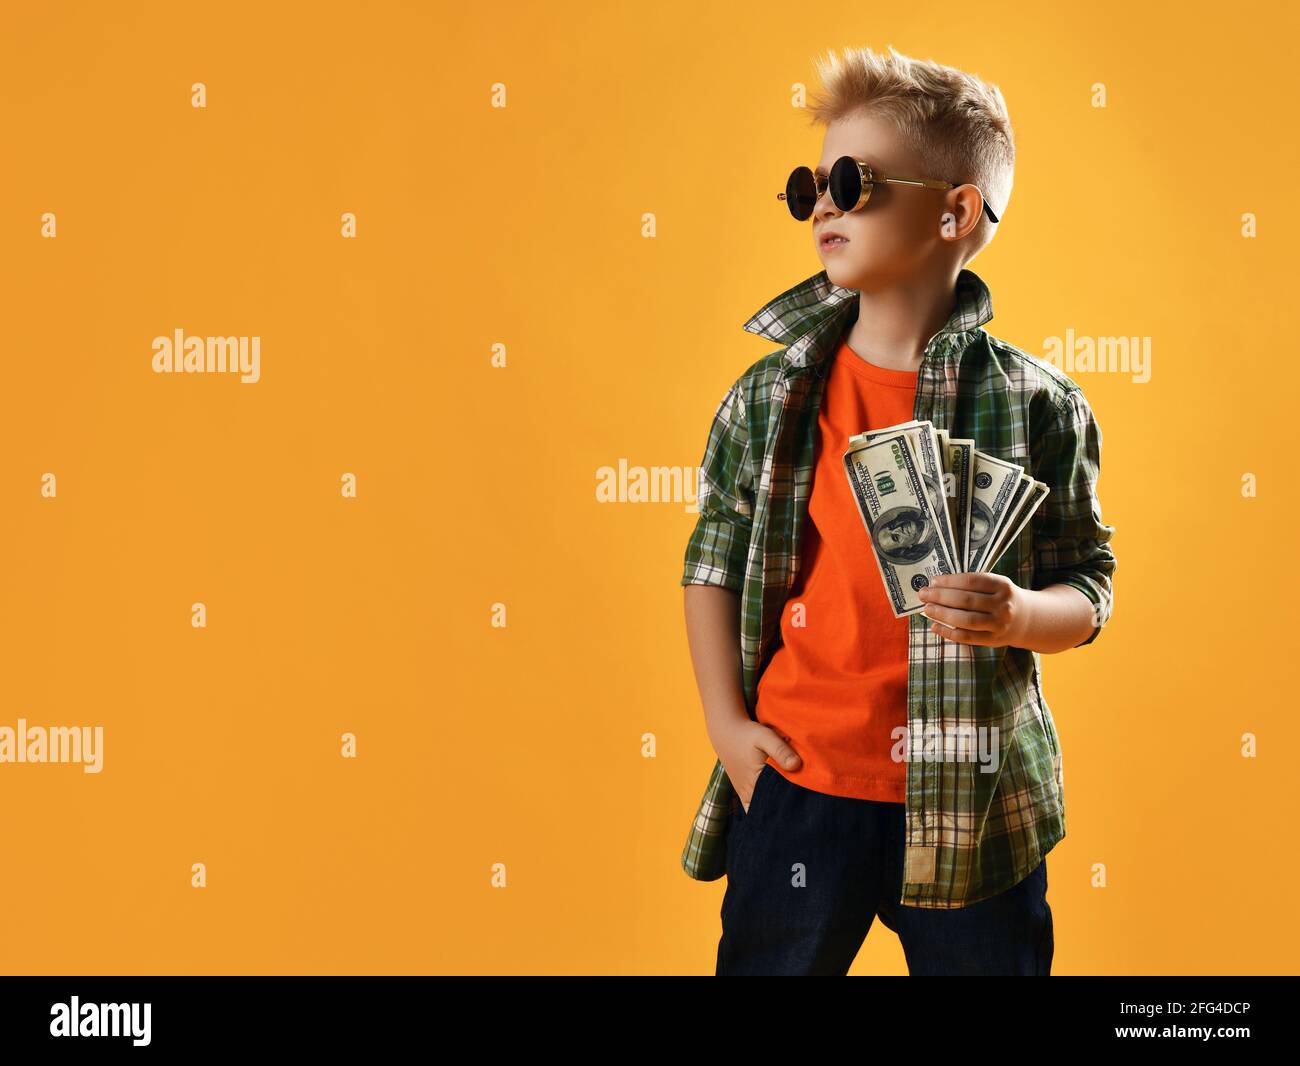 Infalliente ragazzo ricco audace in occhiali da sole rotondi, camicia a quadri e jeans stand reggendo bundle di contanti Foto Stock